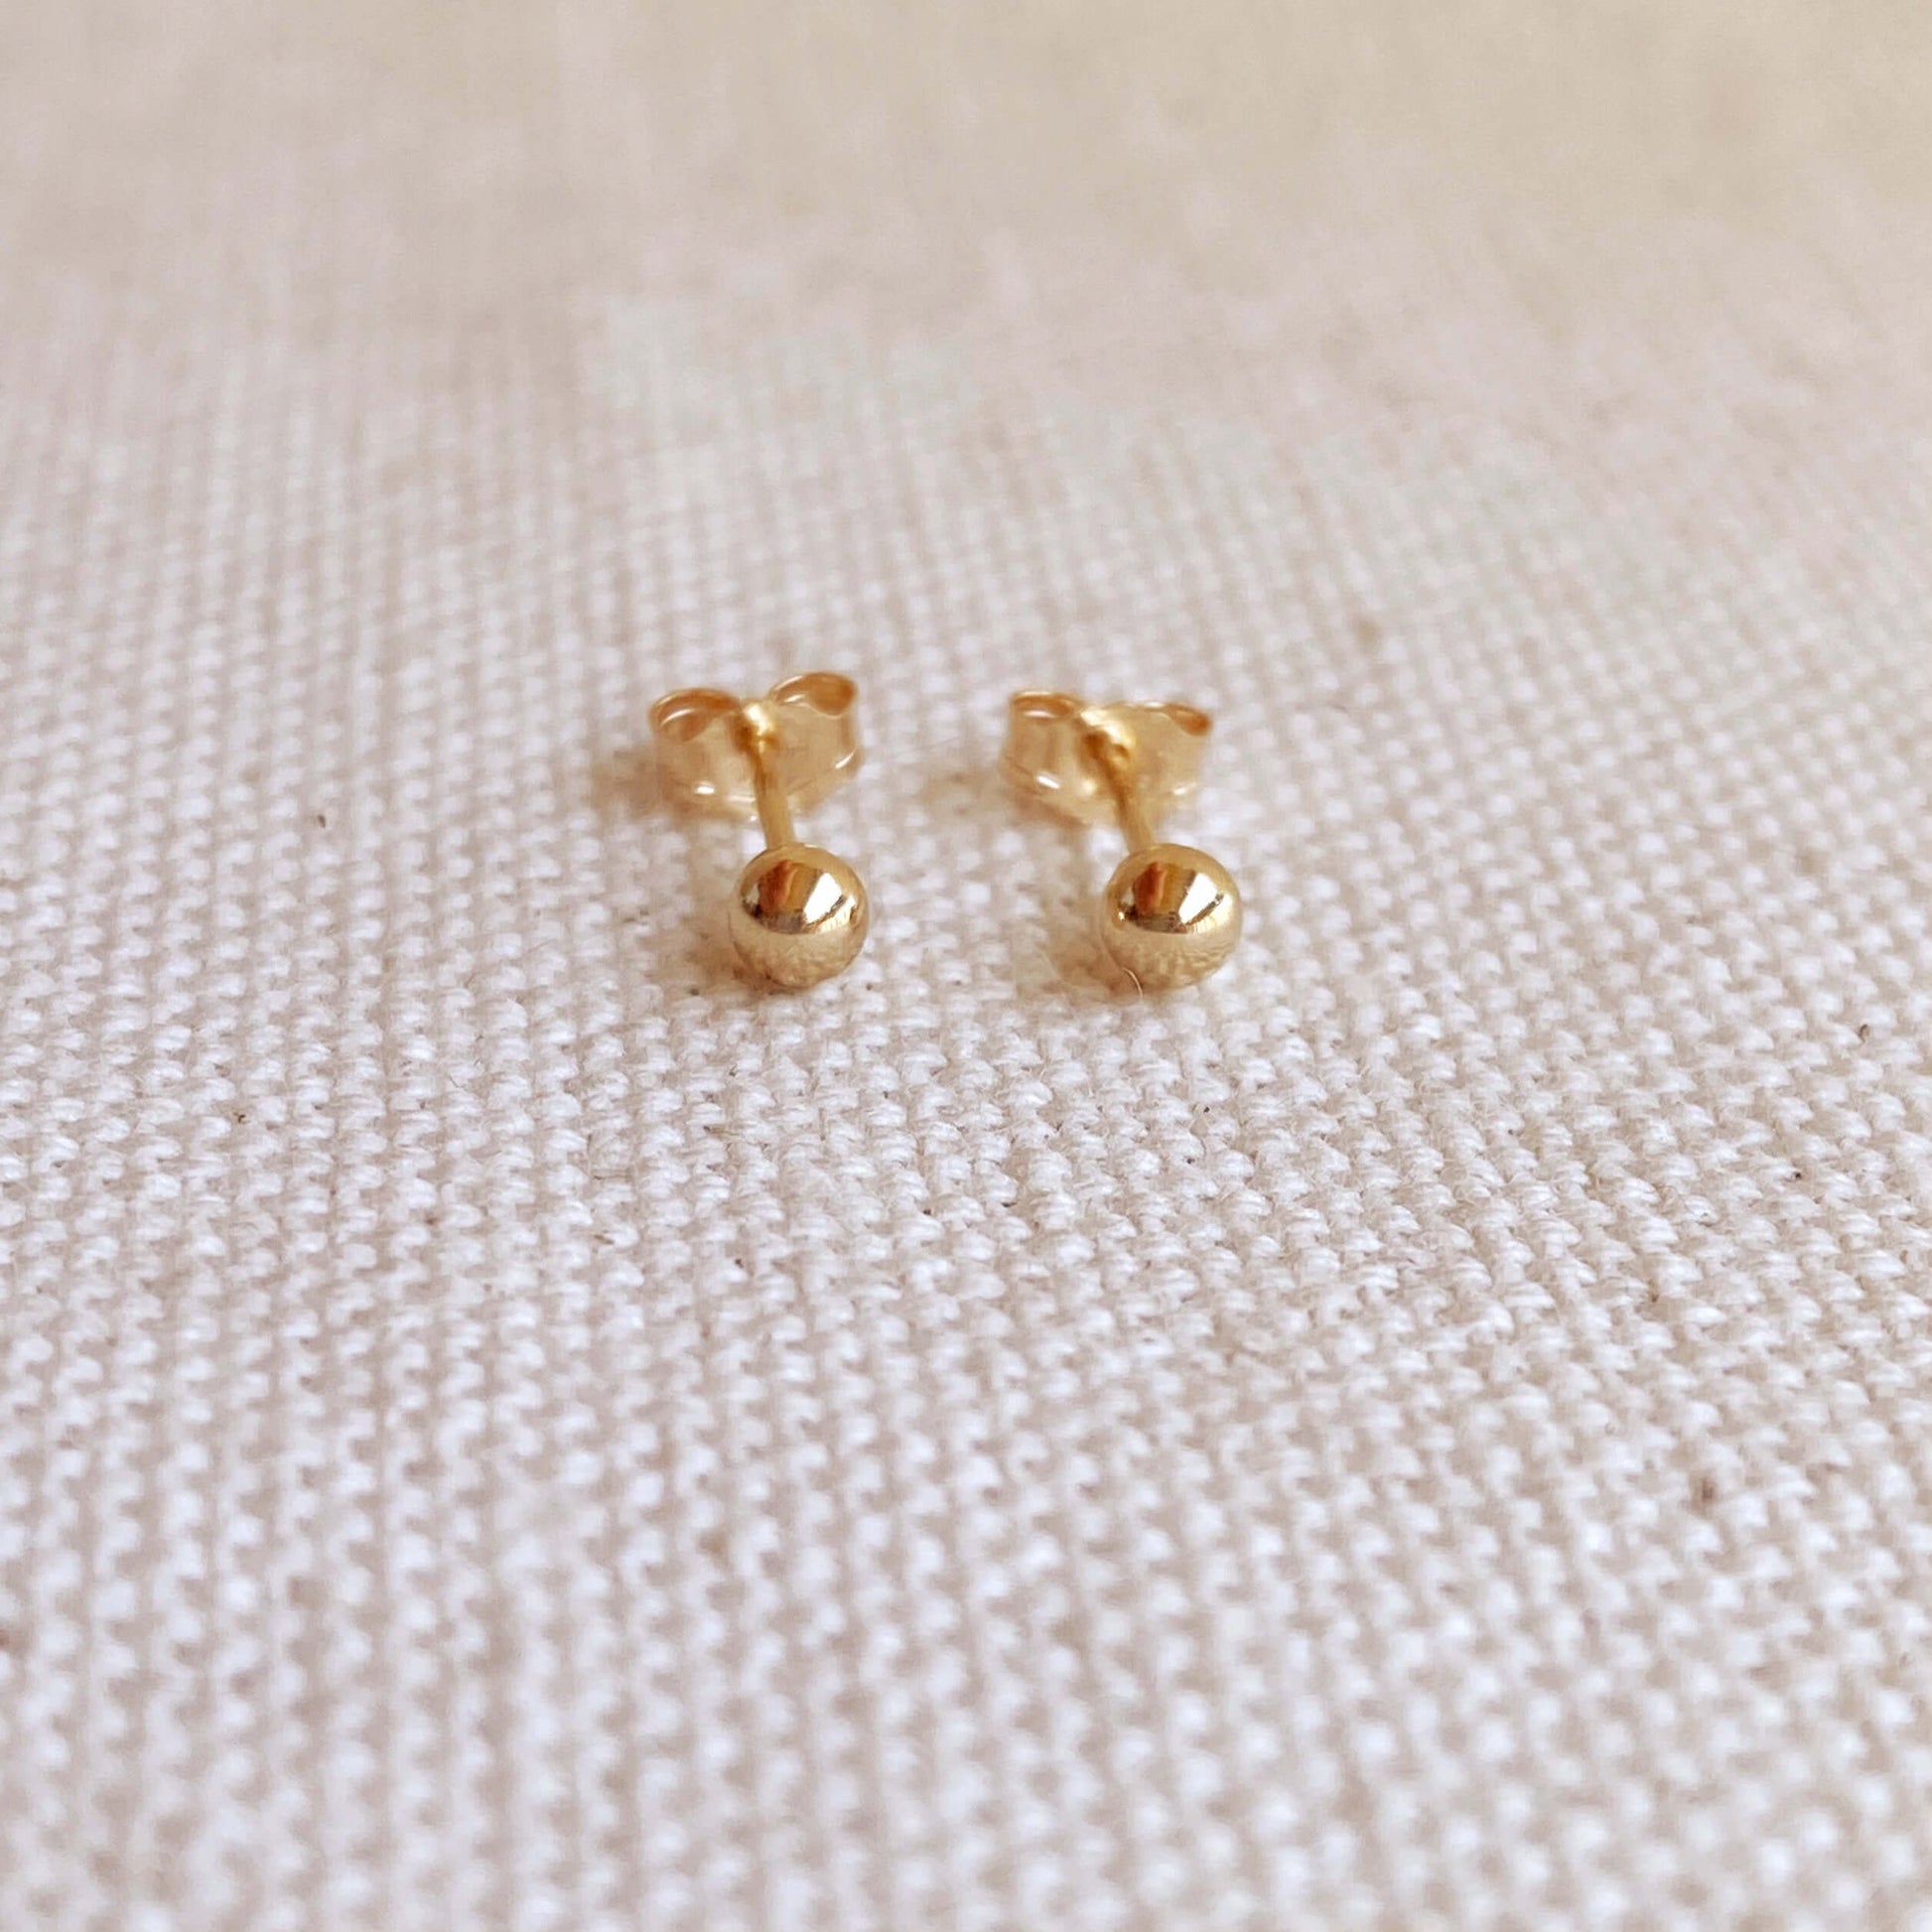 GoldFi 14k Solid Gold 3mm Ball Stud Piercing Earrings